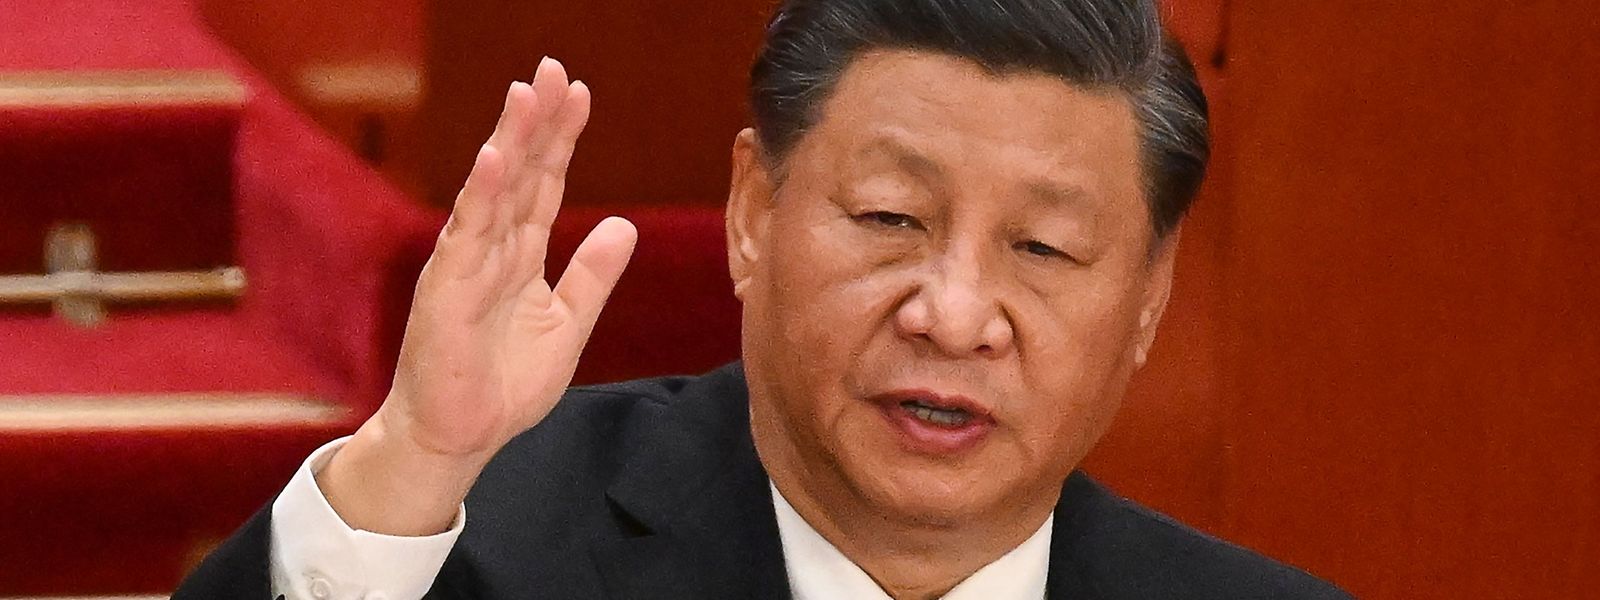 Der 69-Jährige Xi Jinping will am Sonntag eine ungewöhnliche dritte Amtszeit als Generalsekretär antreten.